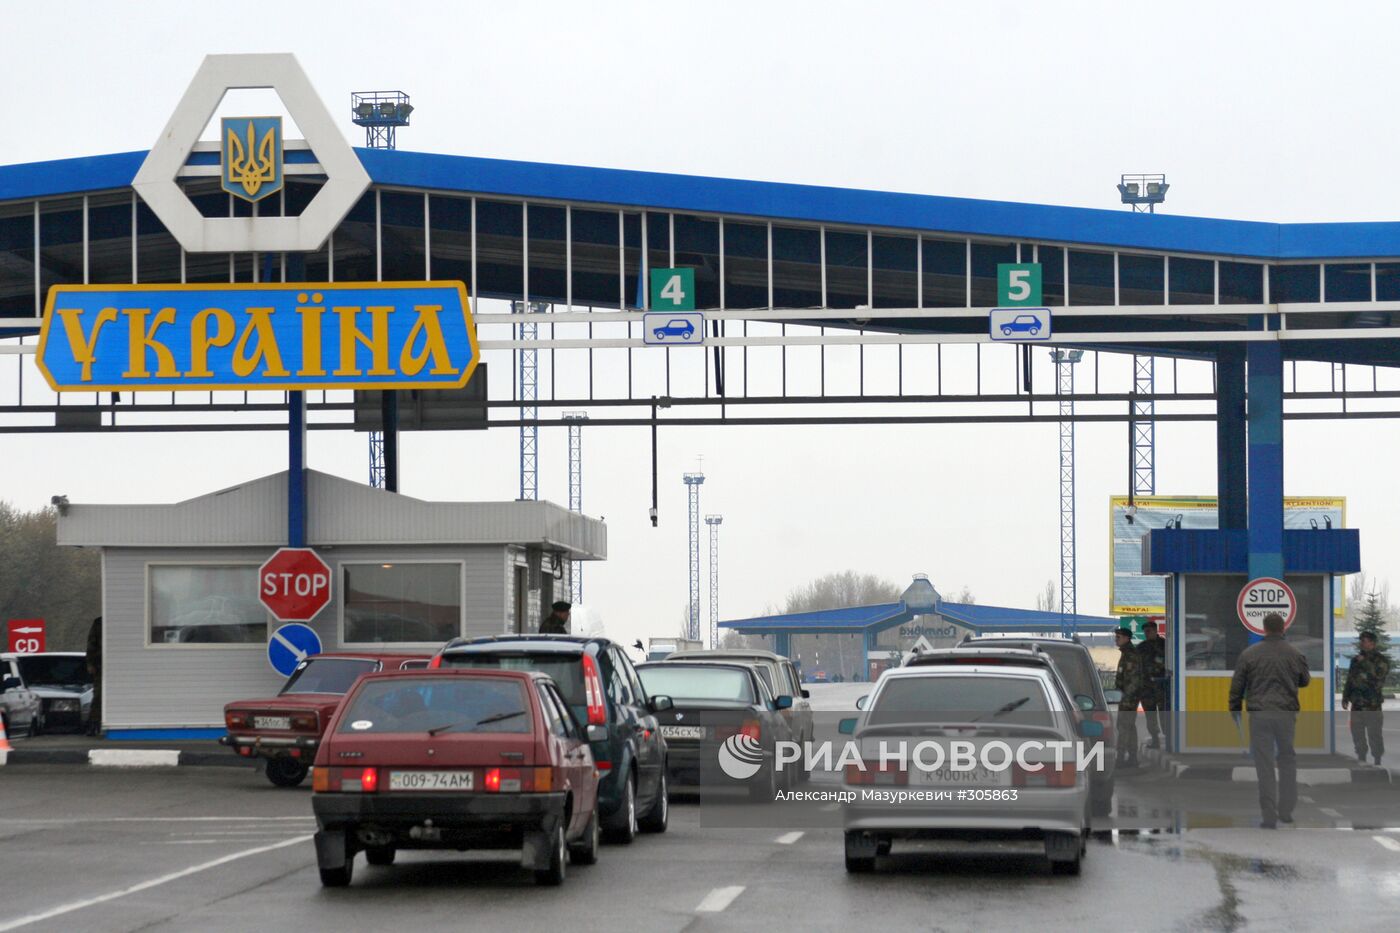 Участок украино-российской границы